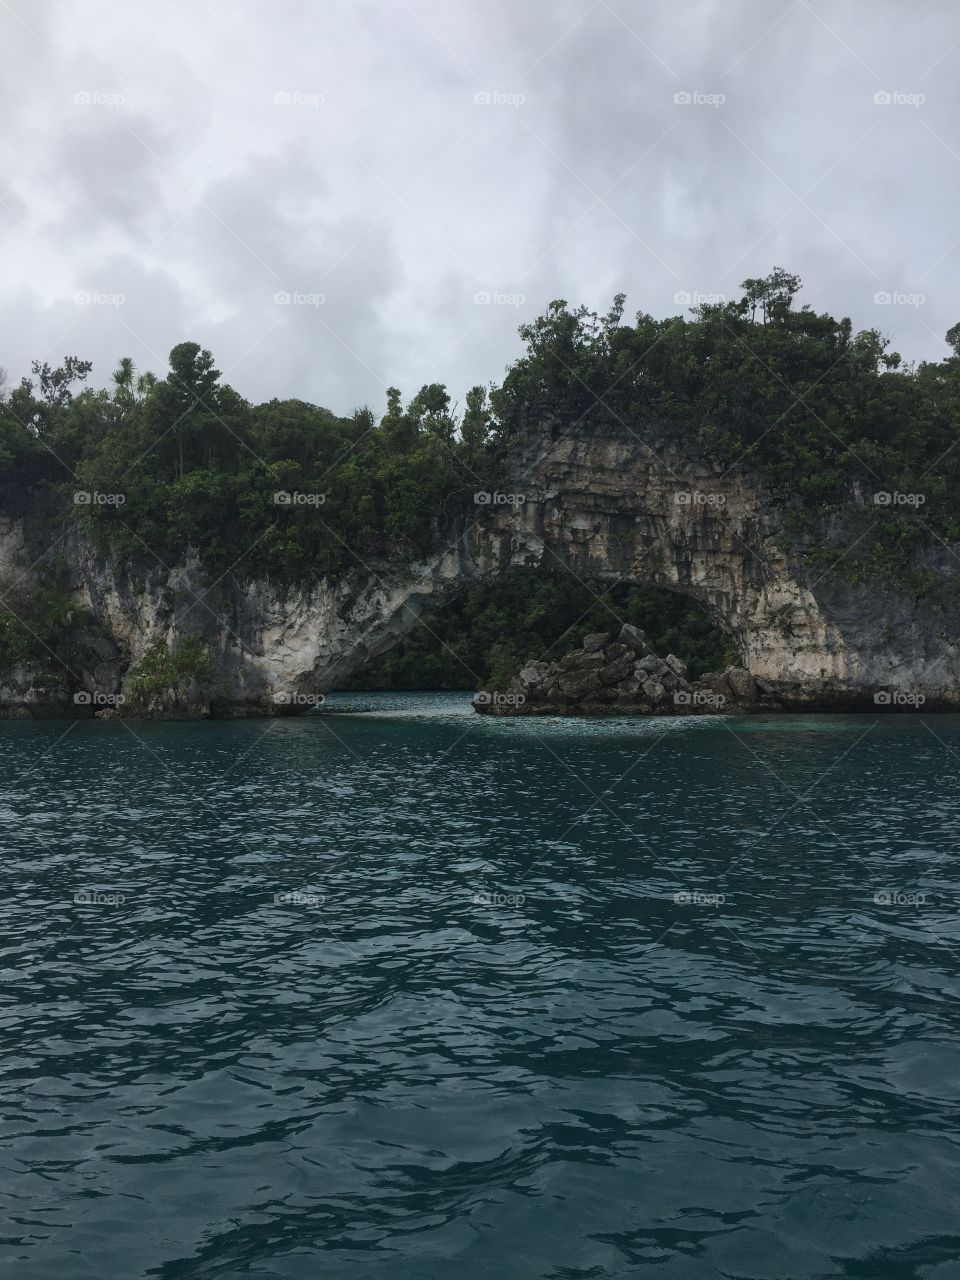 Palau January 2017